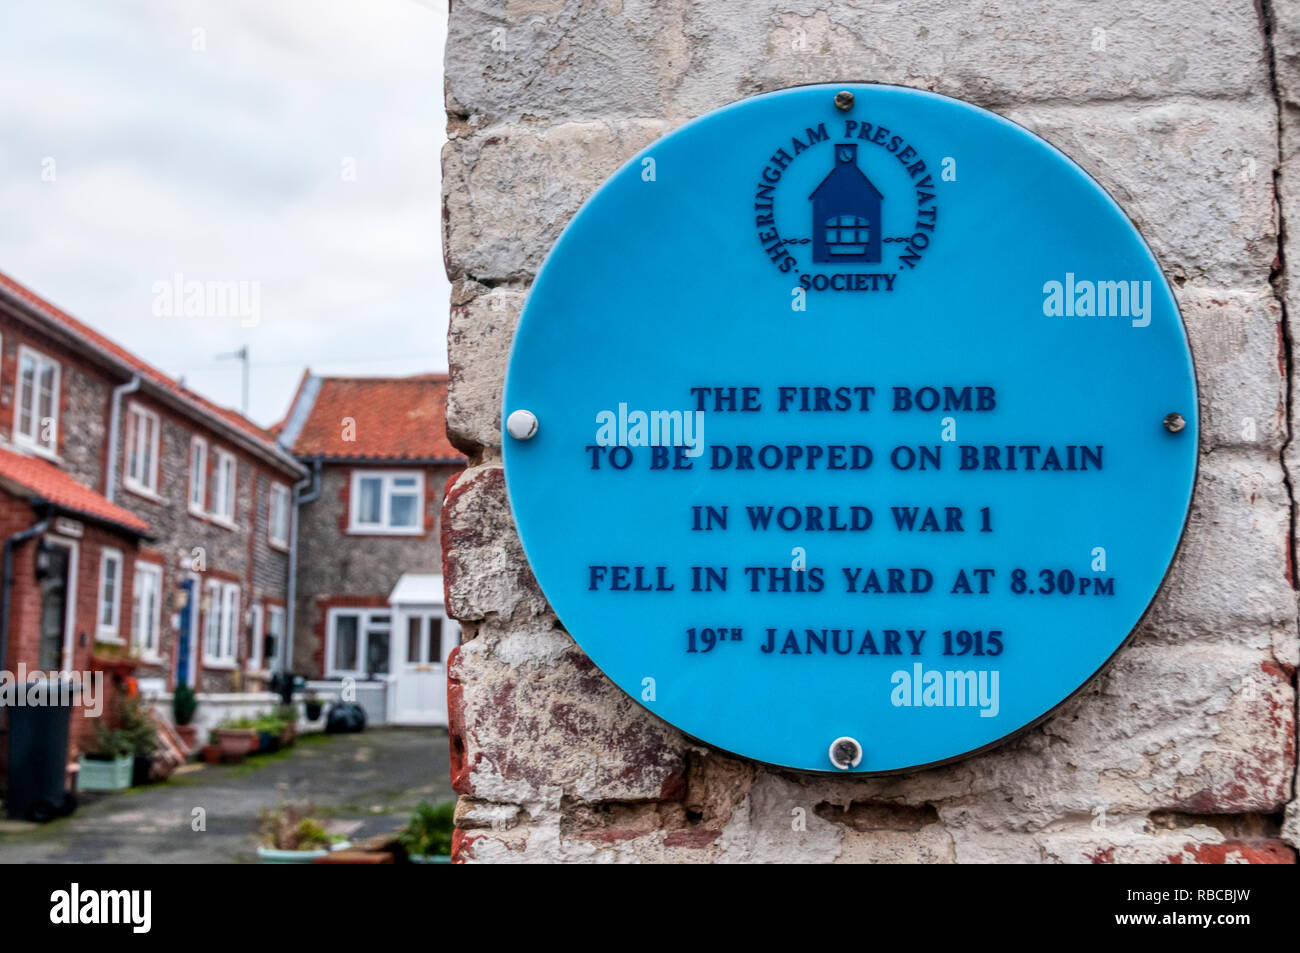 Une blue plaque marque l'emplacement de la première bombe lâchée sur la Grande-Bretagne par Zeppelin dans la Première Guerre mondiale le 19 janvier 1915. Banque D'Images